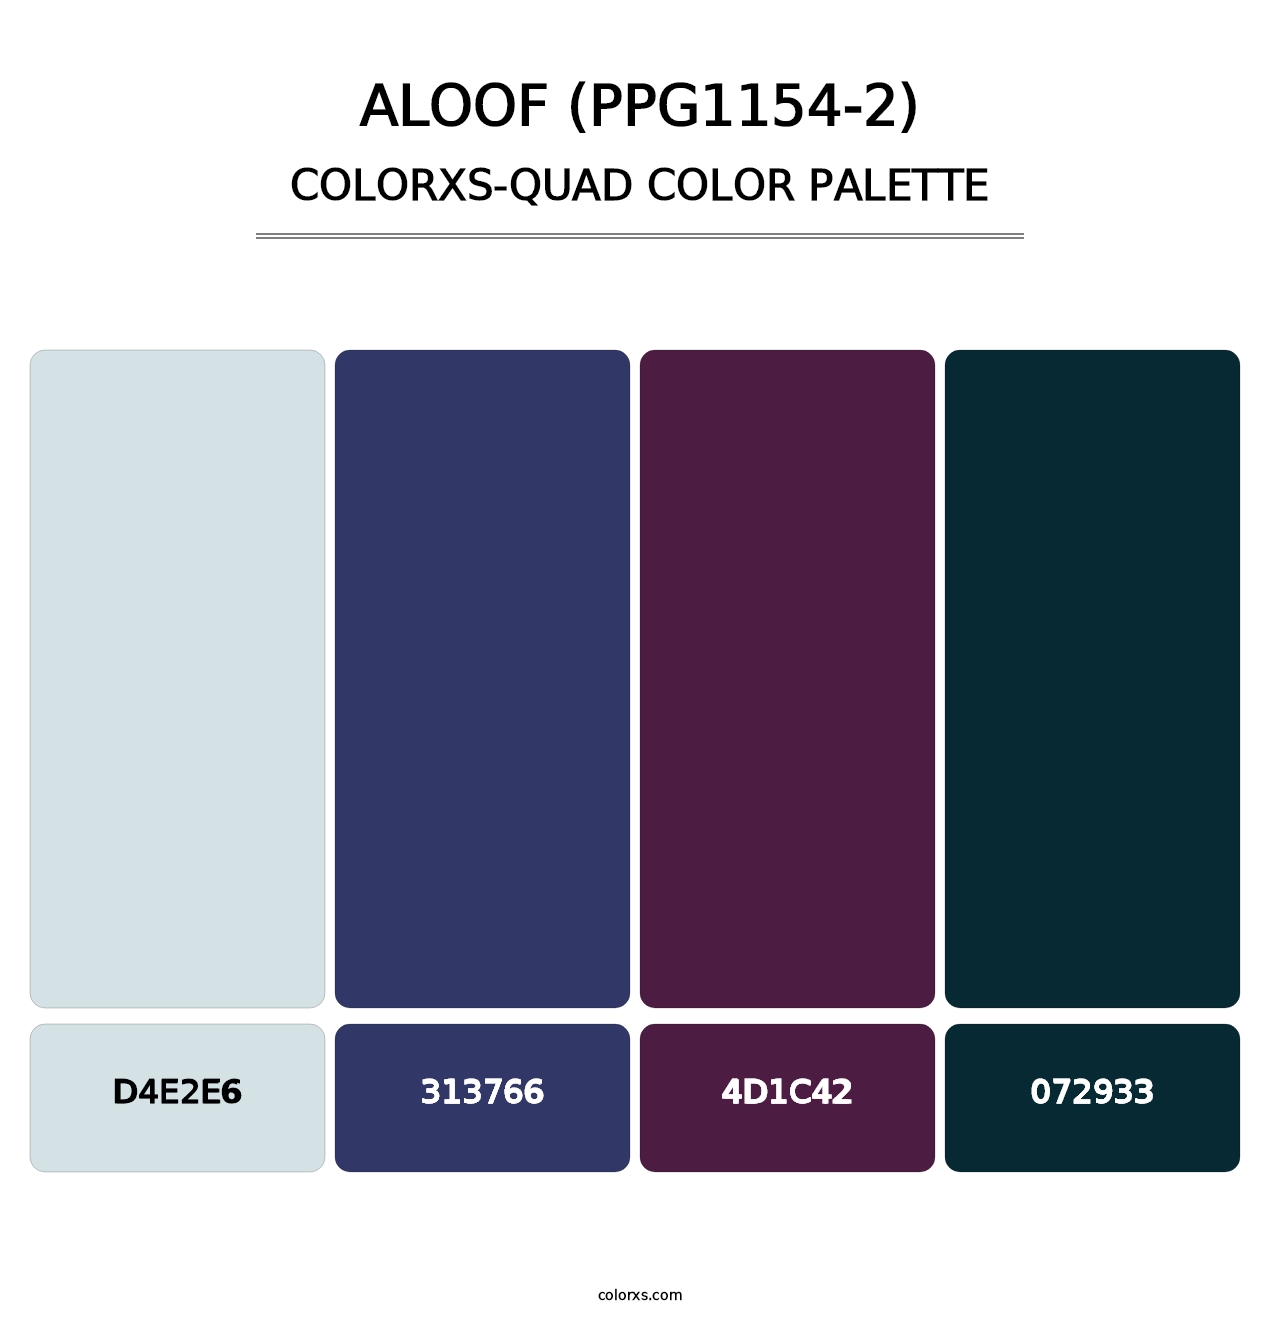 Aloof (PPG1154-2) - Colorxs Quad Palette